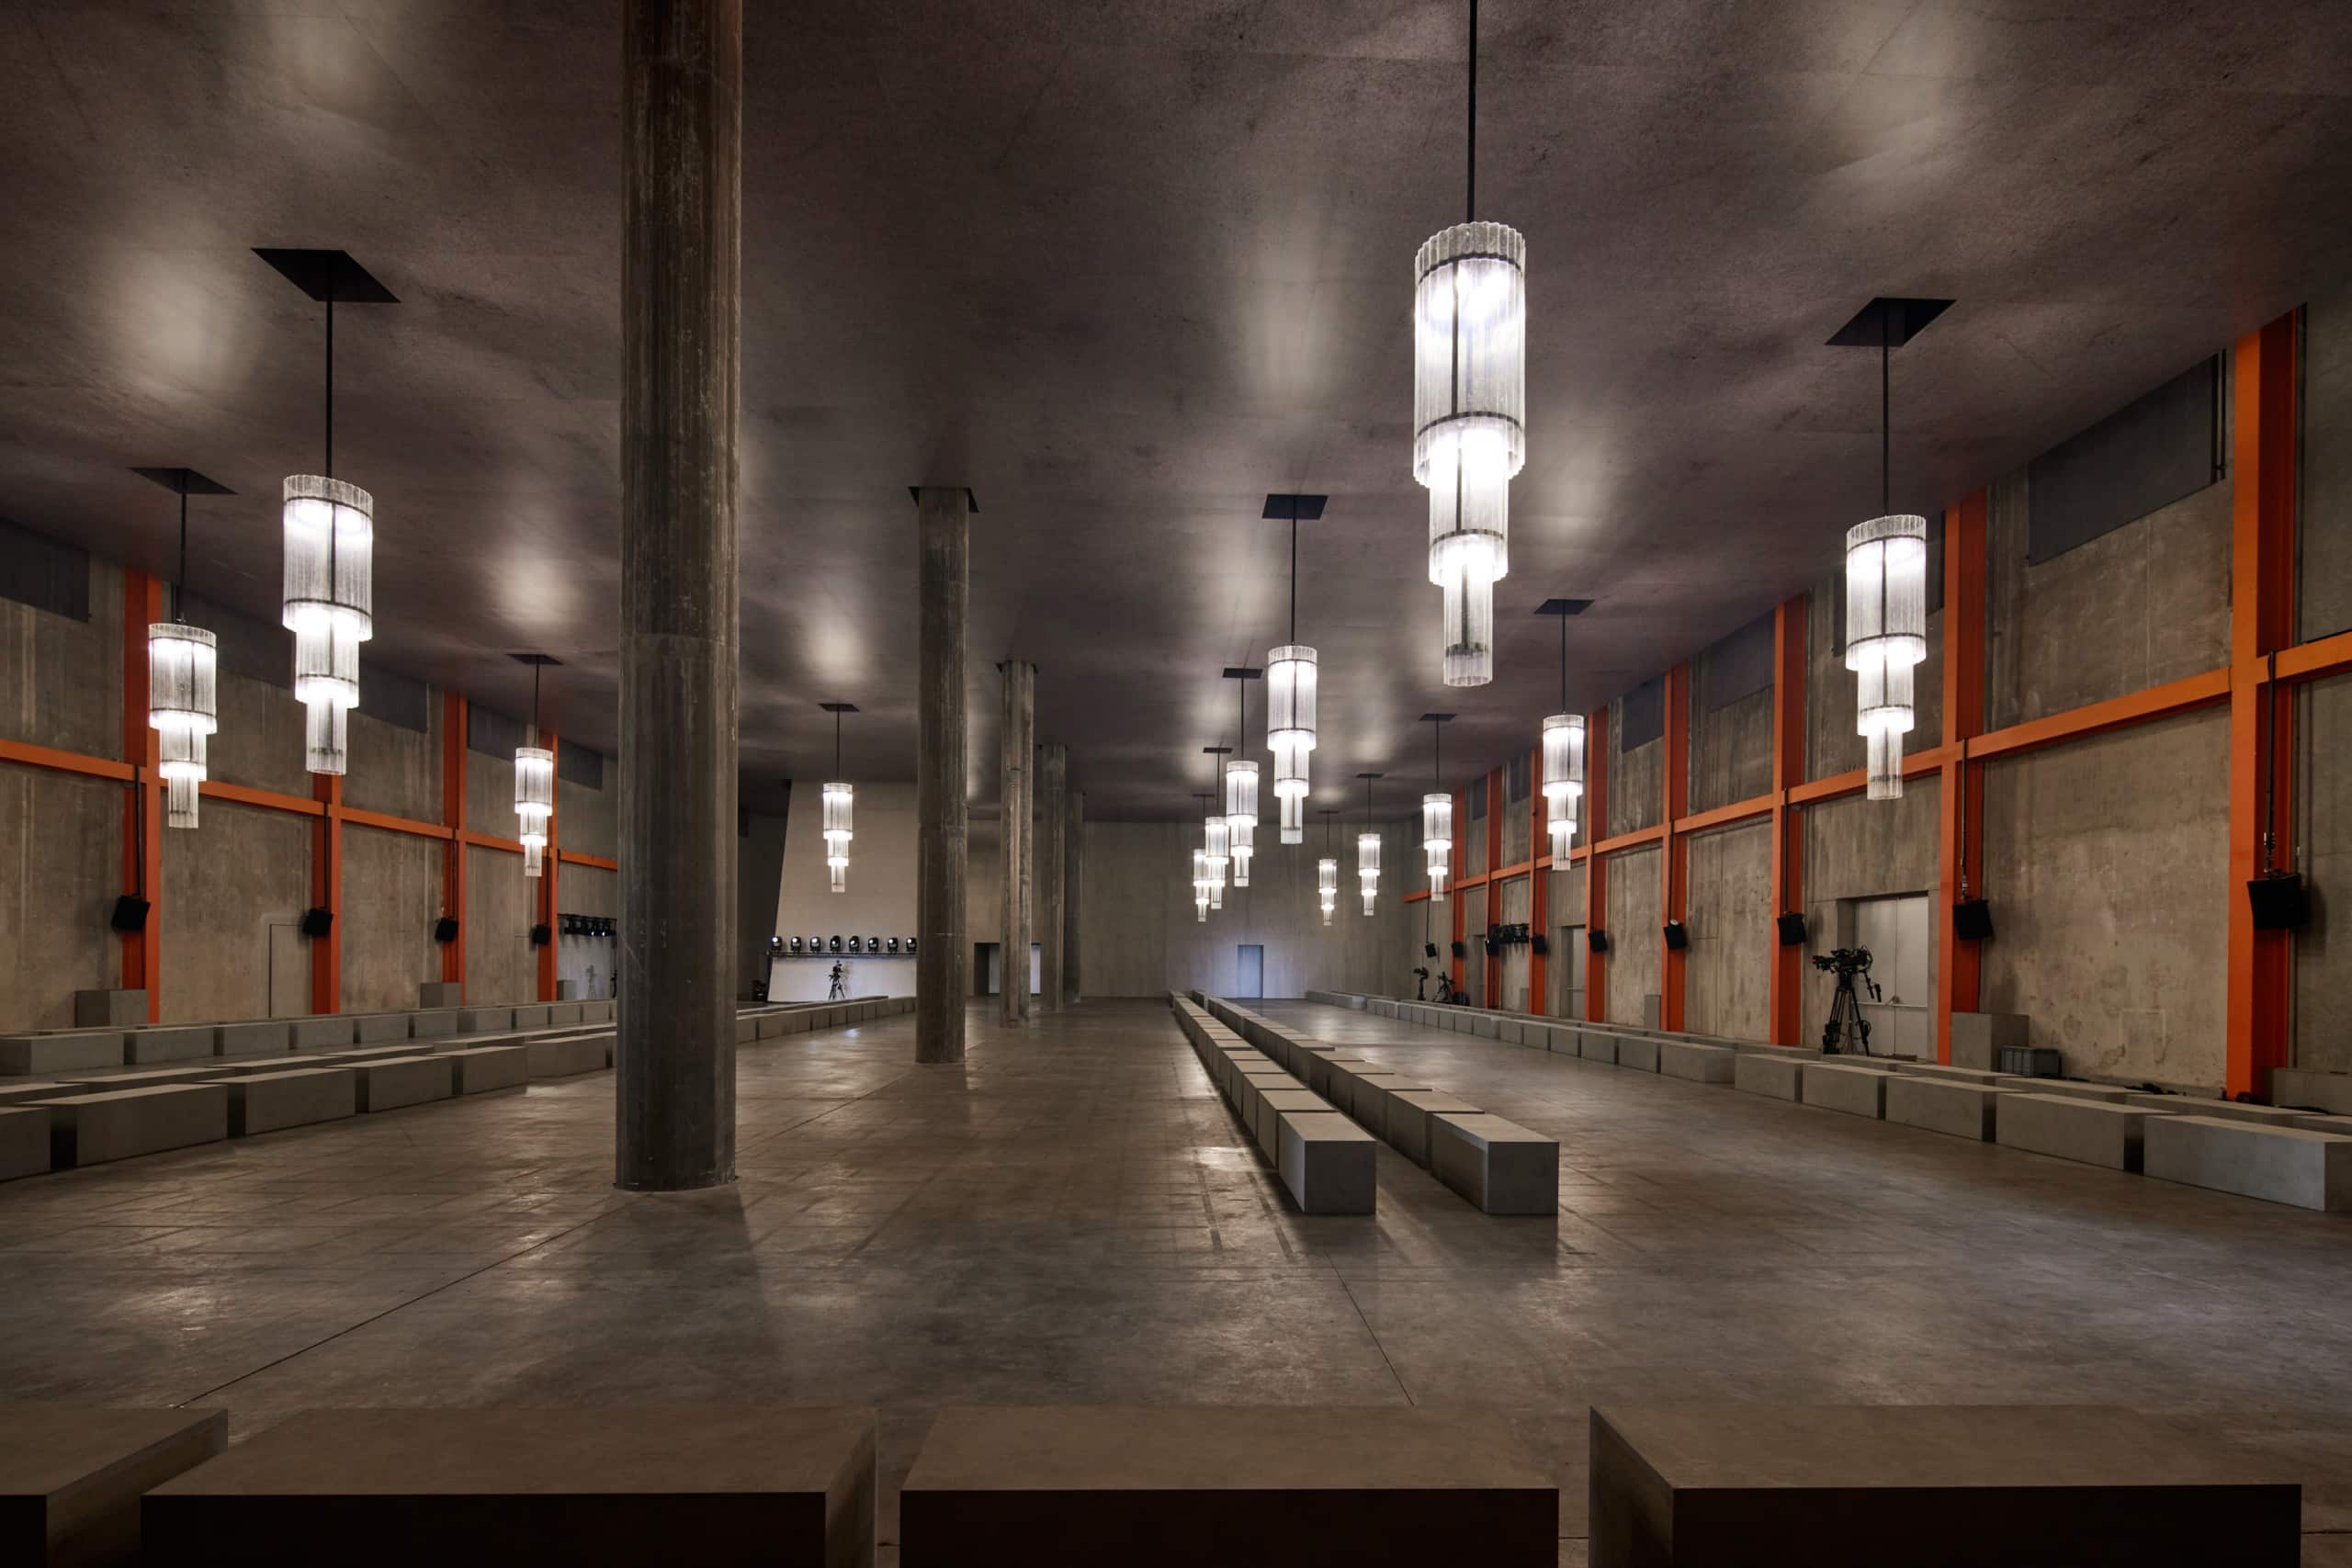 Die bewegliche Decke verändert den Raum von einem dunklen Bunker in eine helle erleuchtete Halle. Foto: Agostino Osio & Alberto Moncada